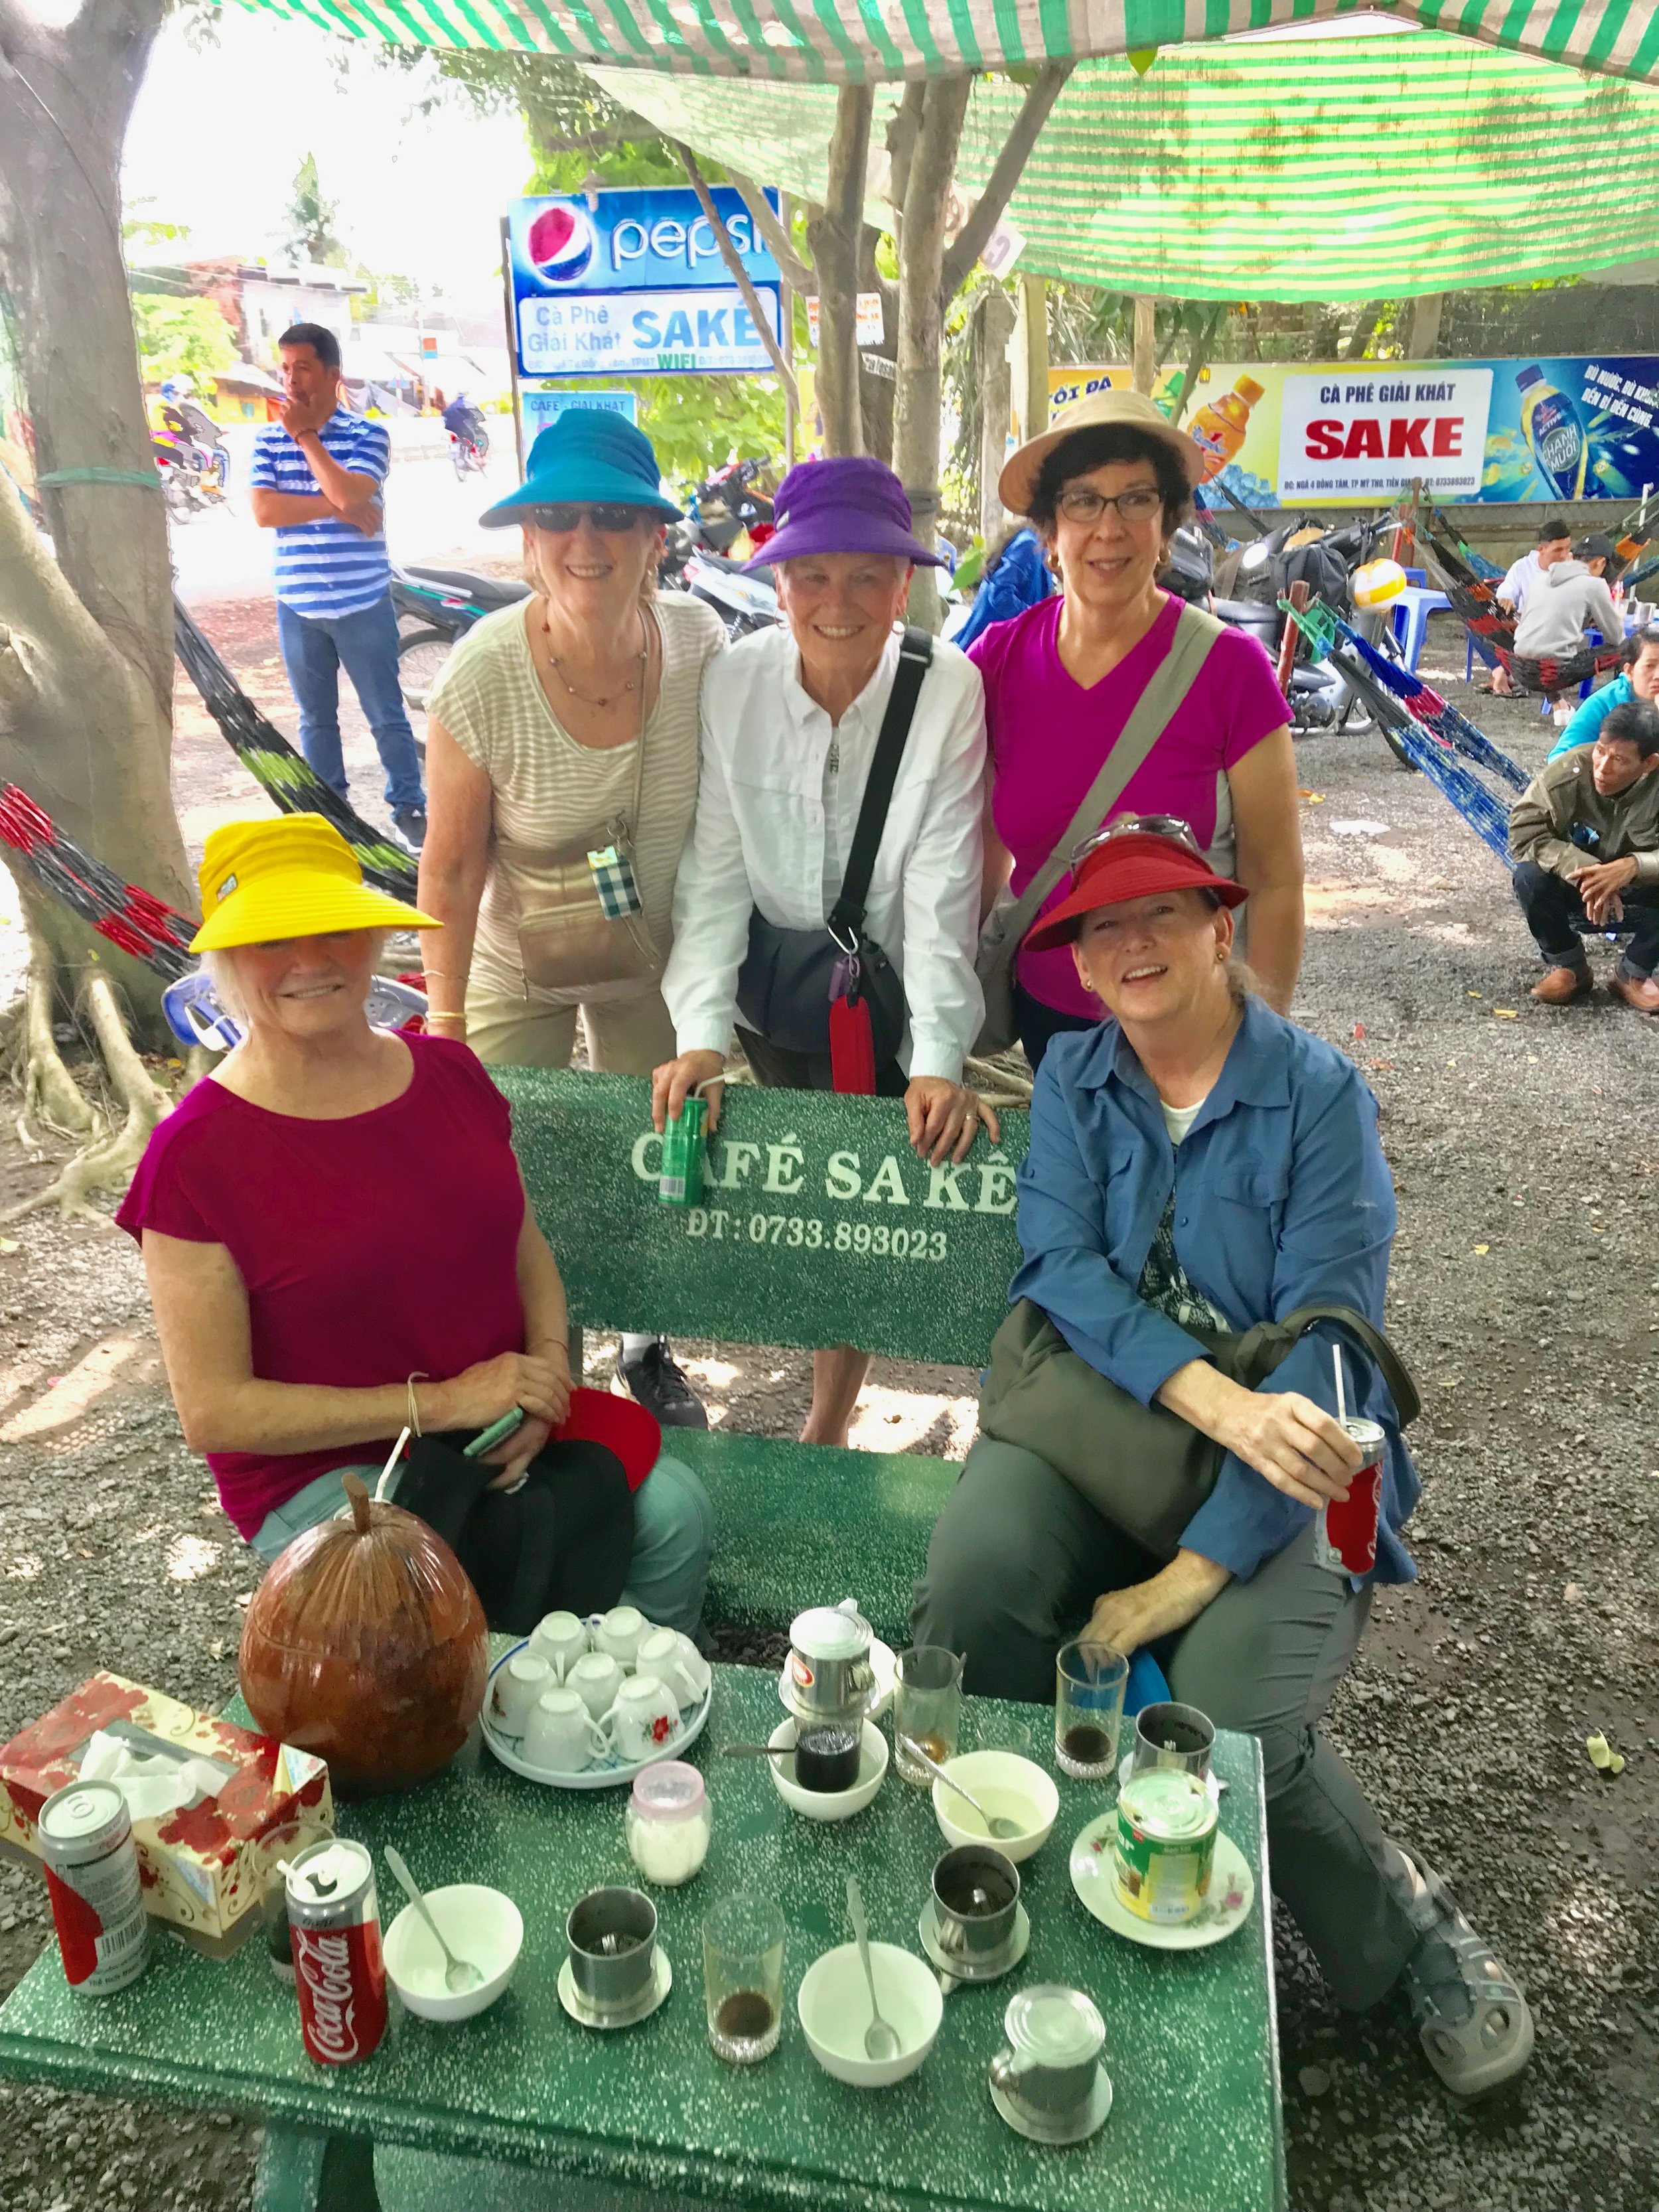 Cafe Sake pix of 5 woman sharing the trip.jpg*.jpg